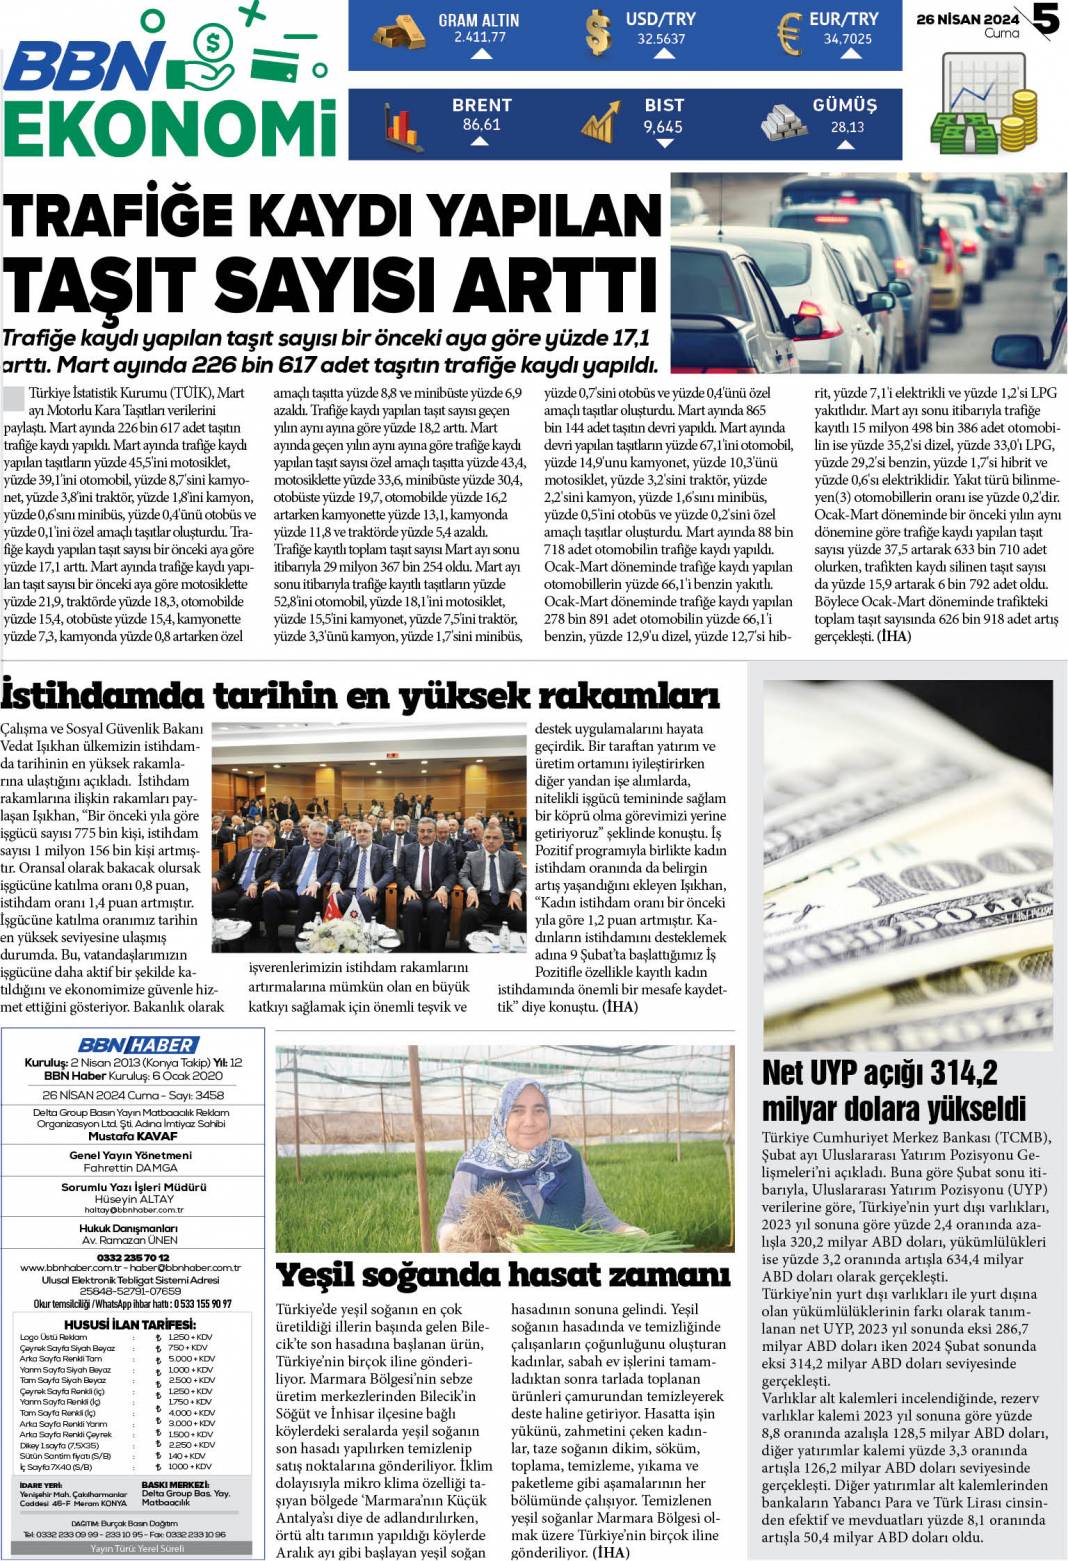 20 Eylül 2022 Salı BBN Haber e Gazete 5